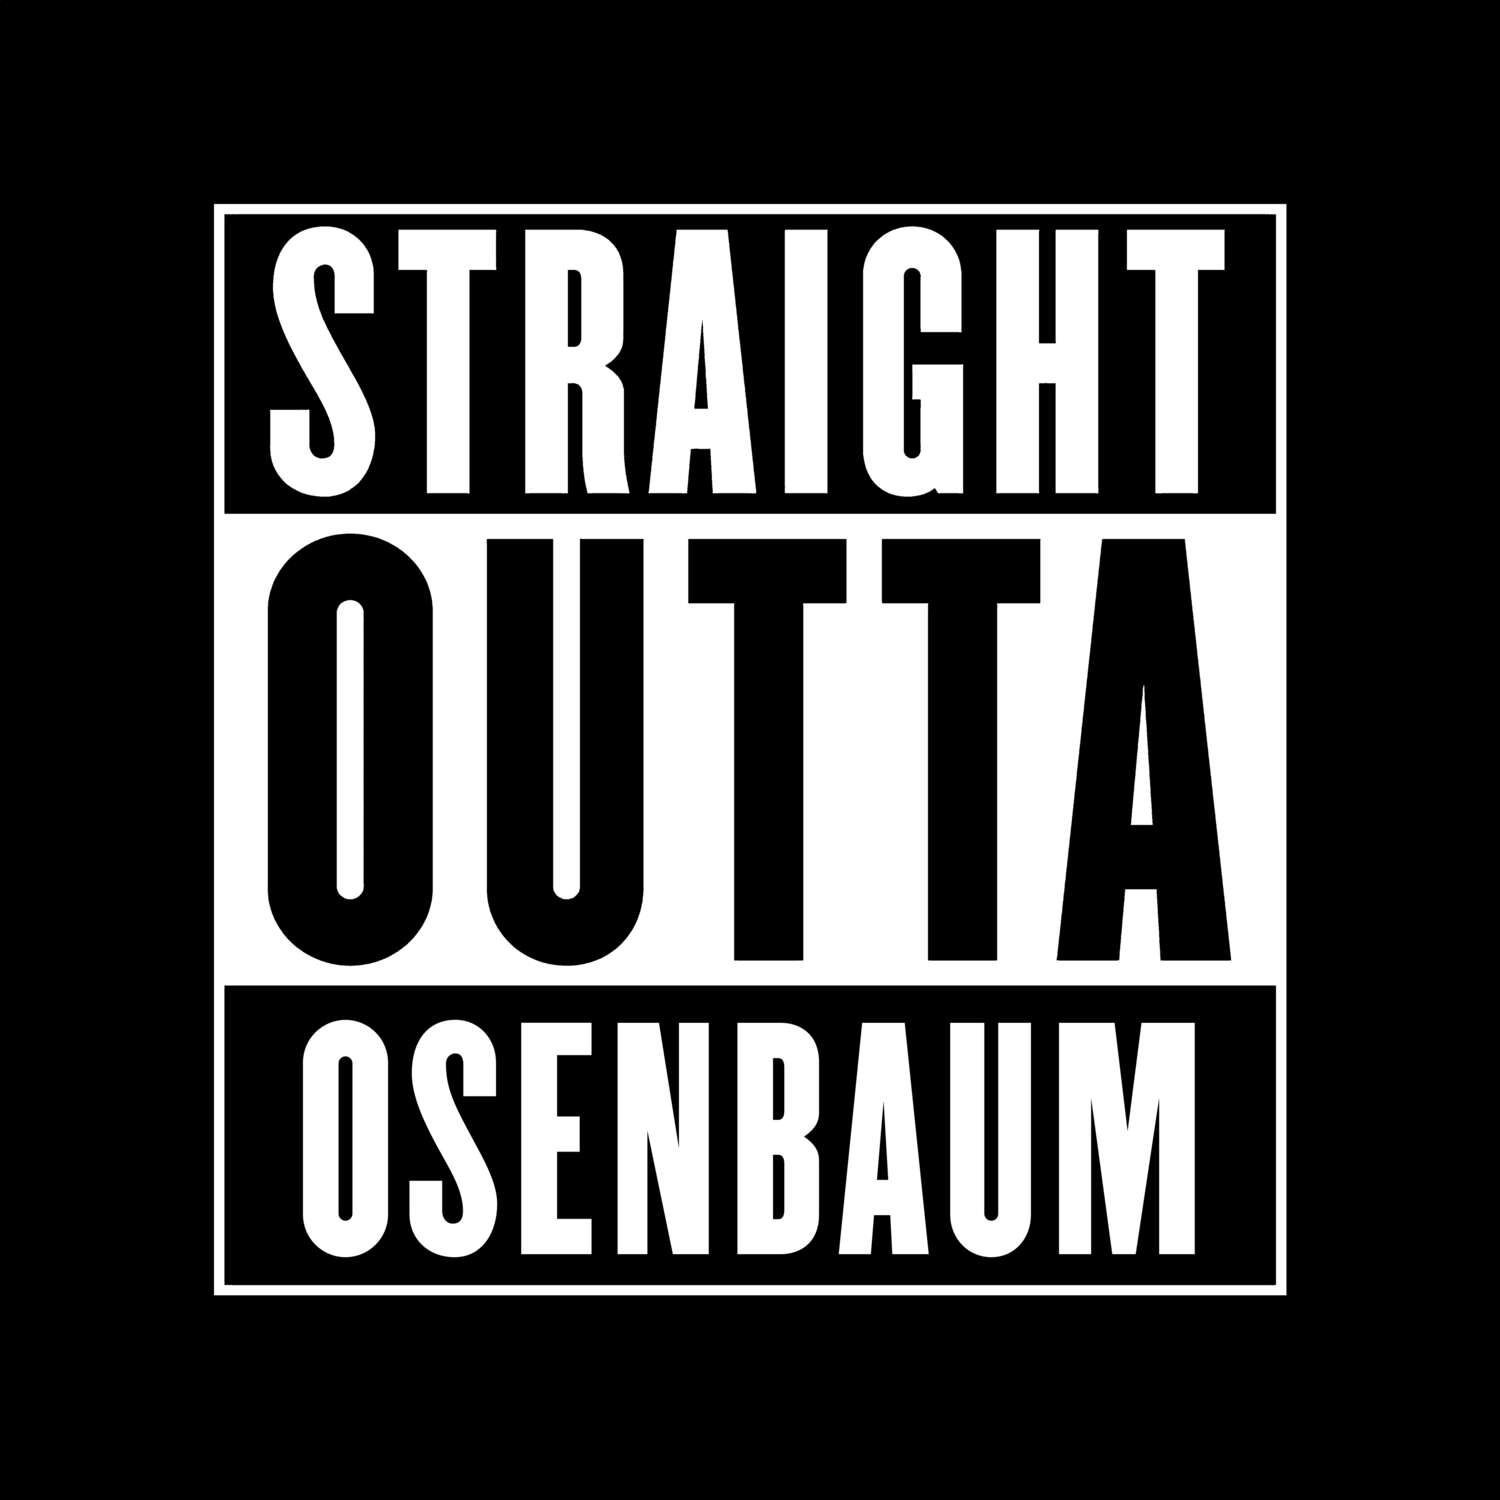 Osenbaum T-Shirt »Straight Outta«